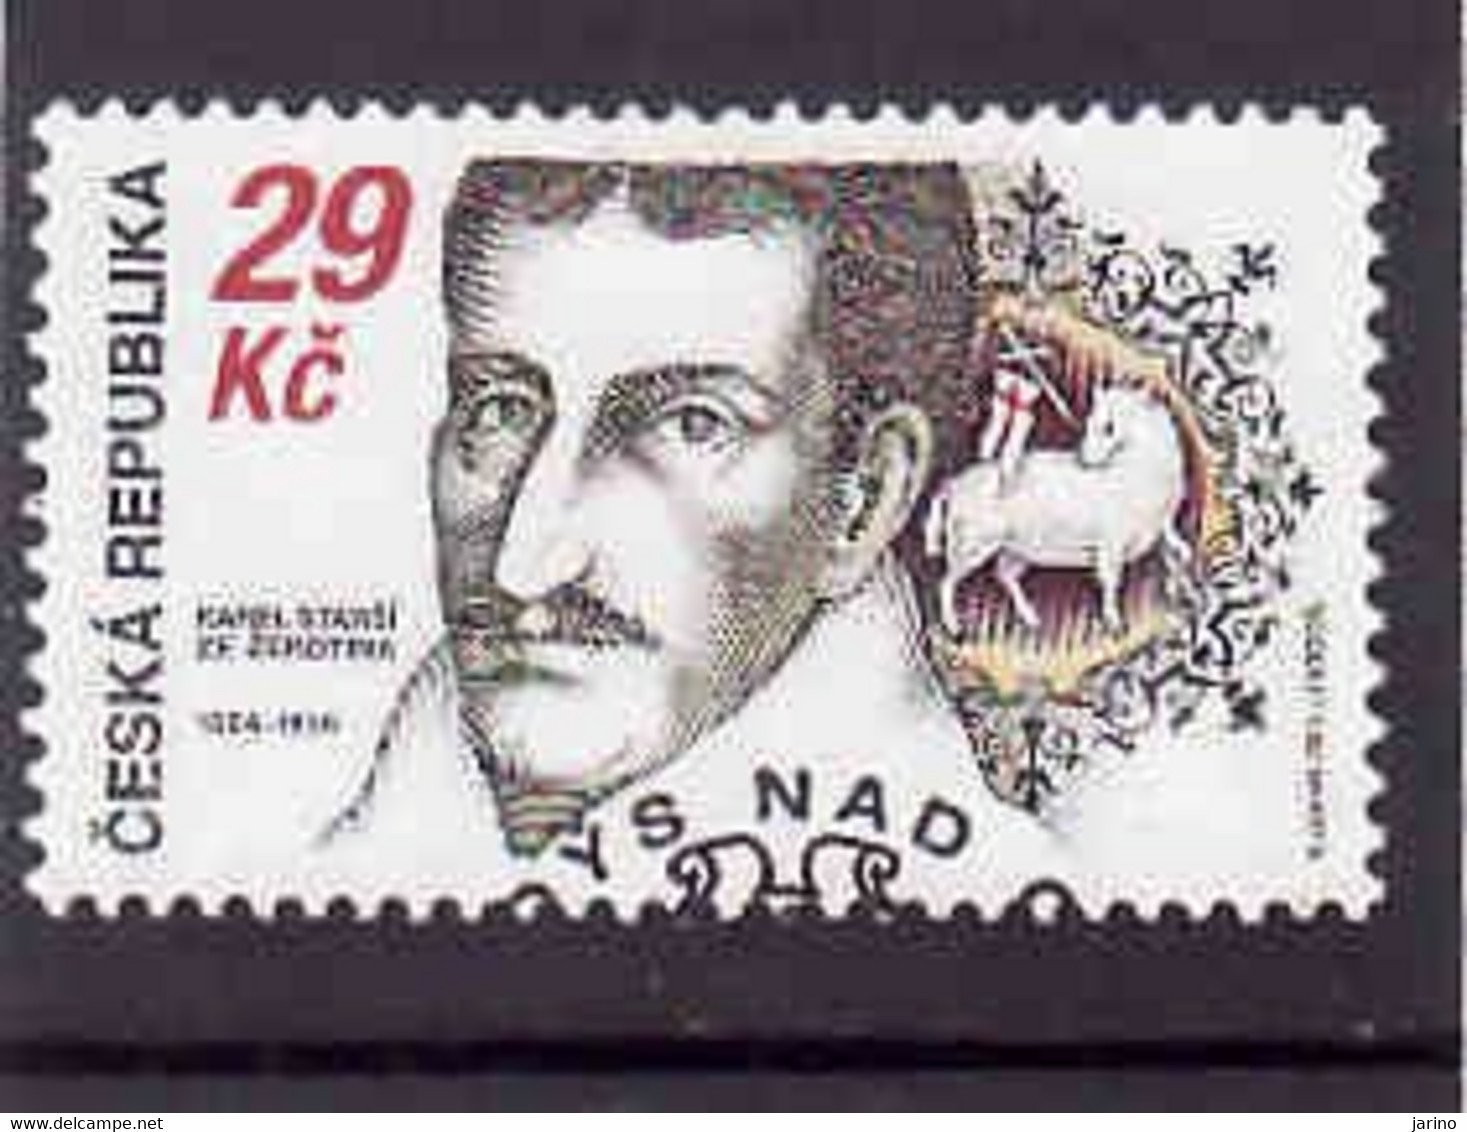 Czech Republic 2014, Michel 816, Karel Starší Ze Žerotína, Used.I Will Complete Your Wantlist Of Czech Or Slovak Stamps - Gebruikt